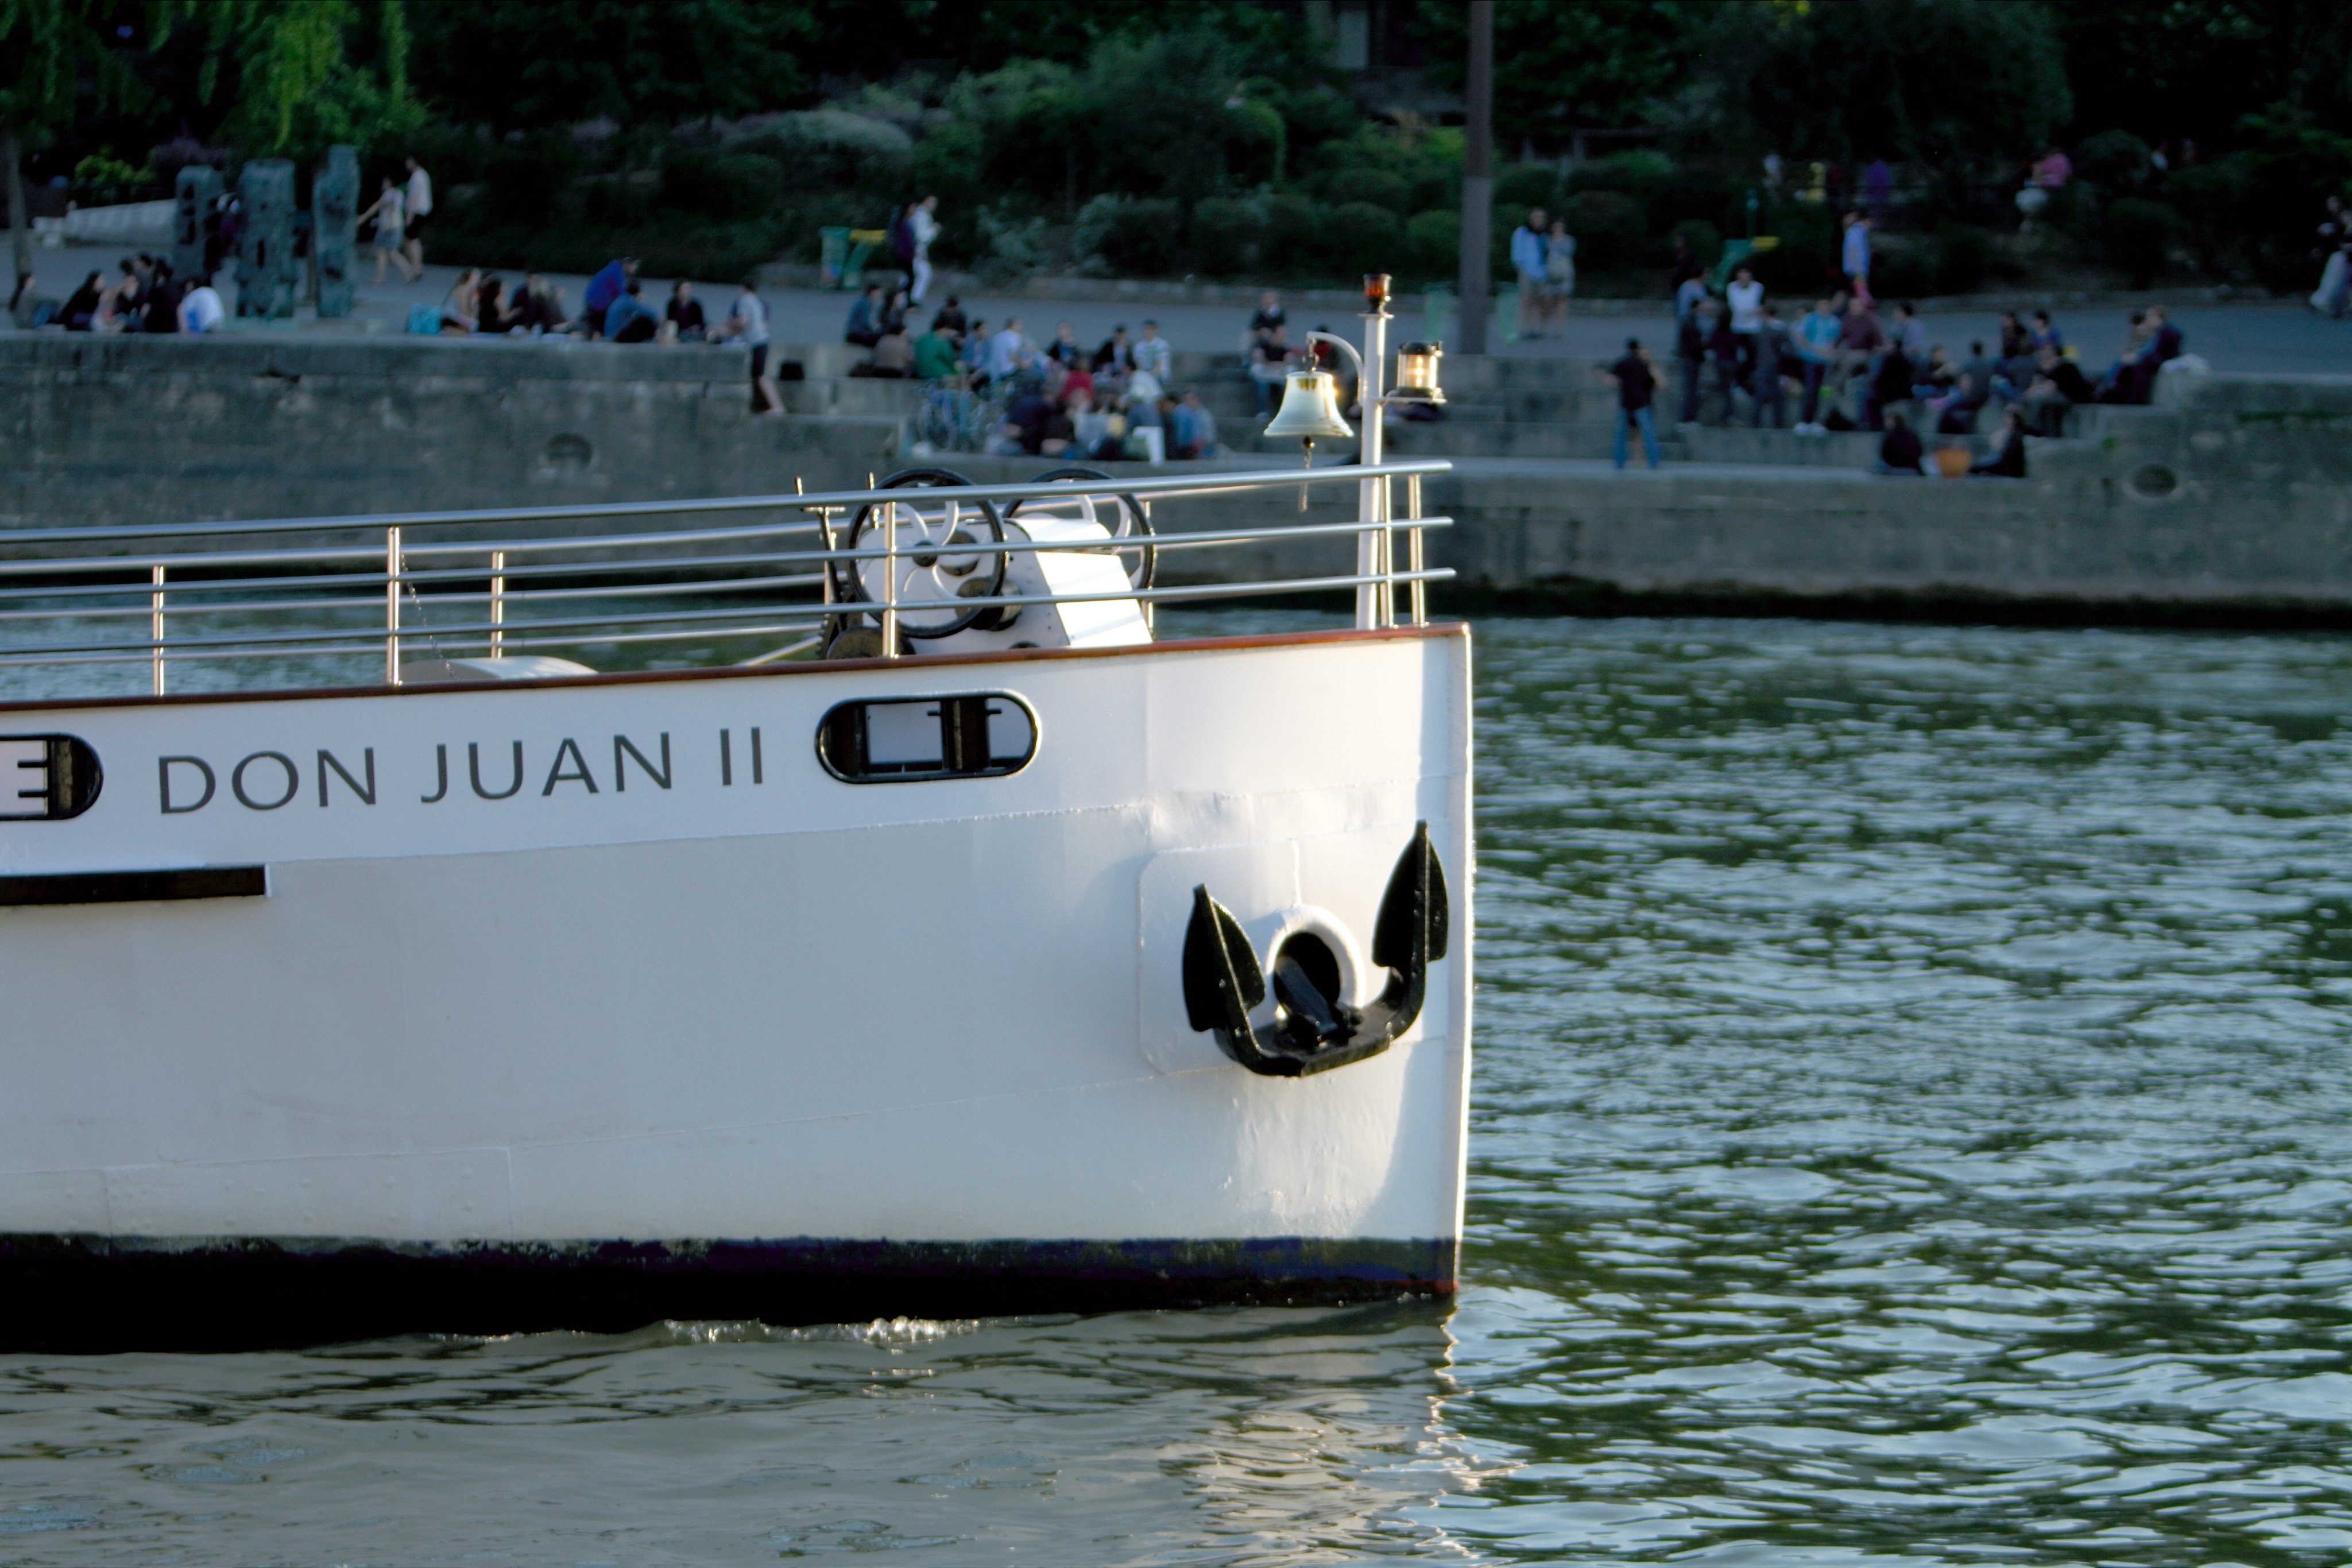 653-don-juan-ii-of-yachts-de-paris.jpg